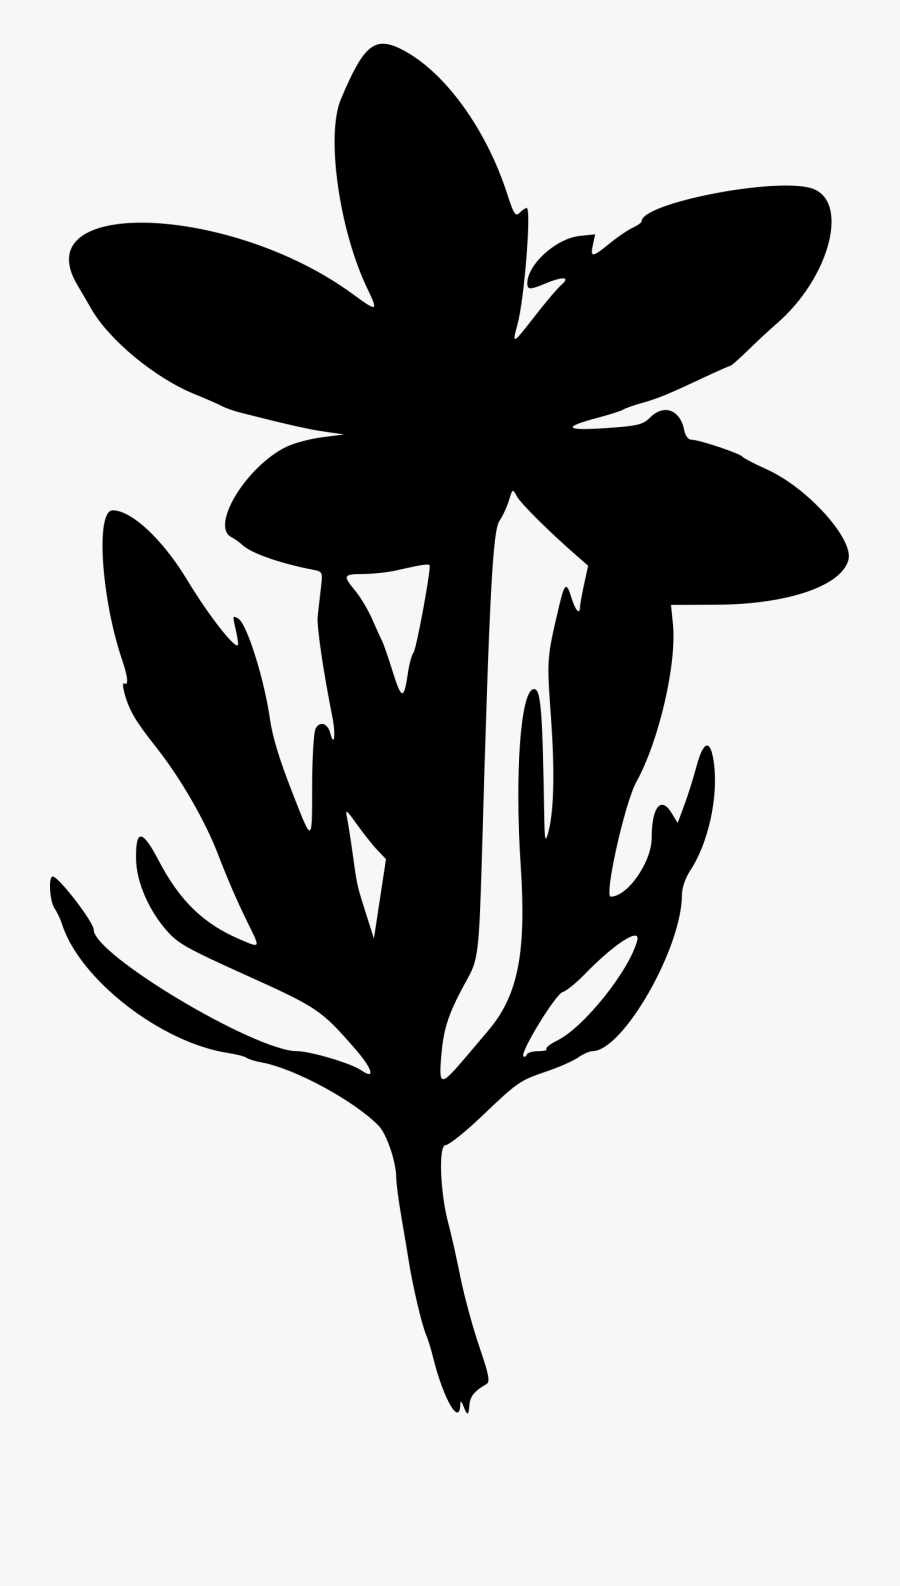 Silhouette Flower Clip Art - Flower Silhouette Transparent, Transparent Clipart